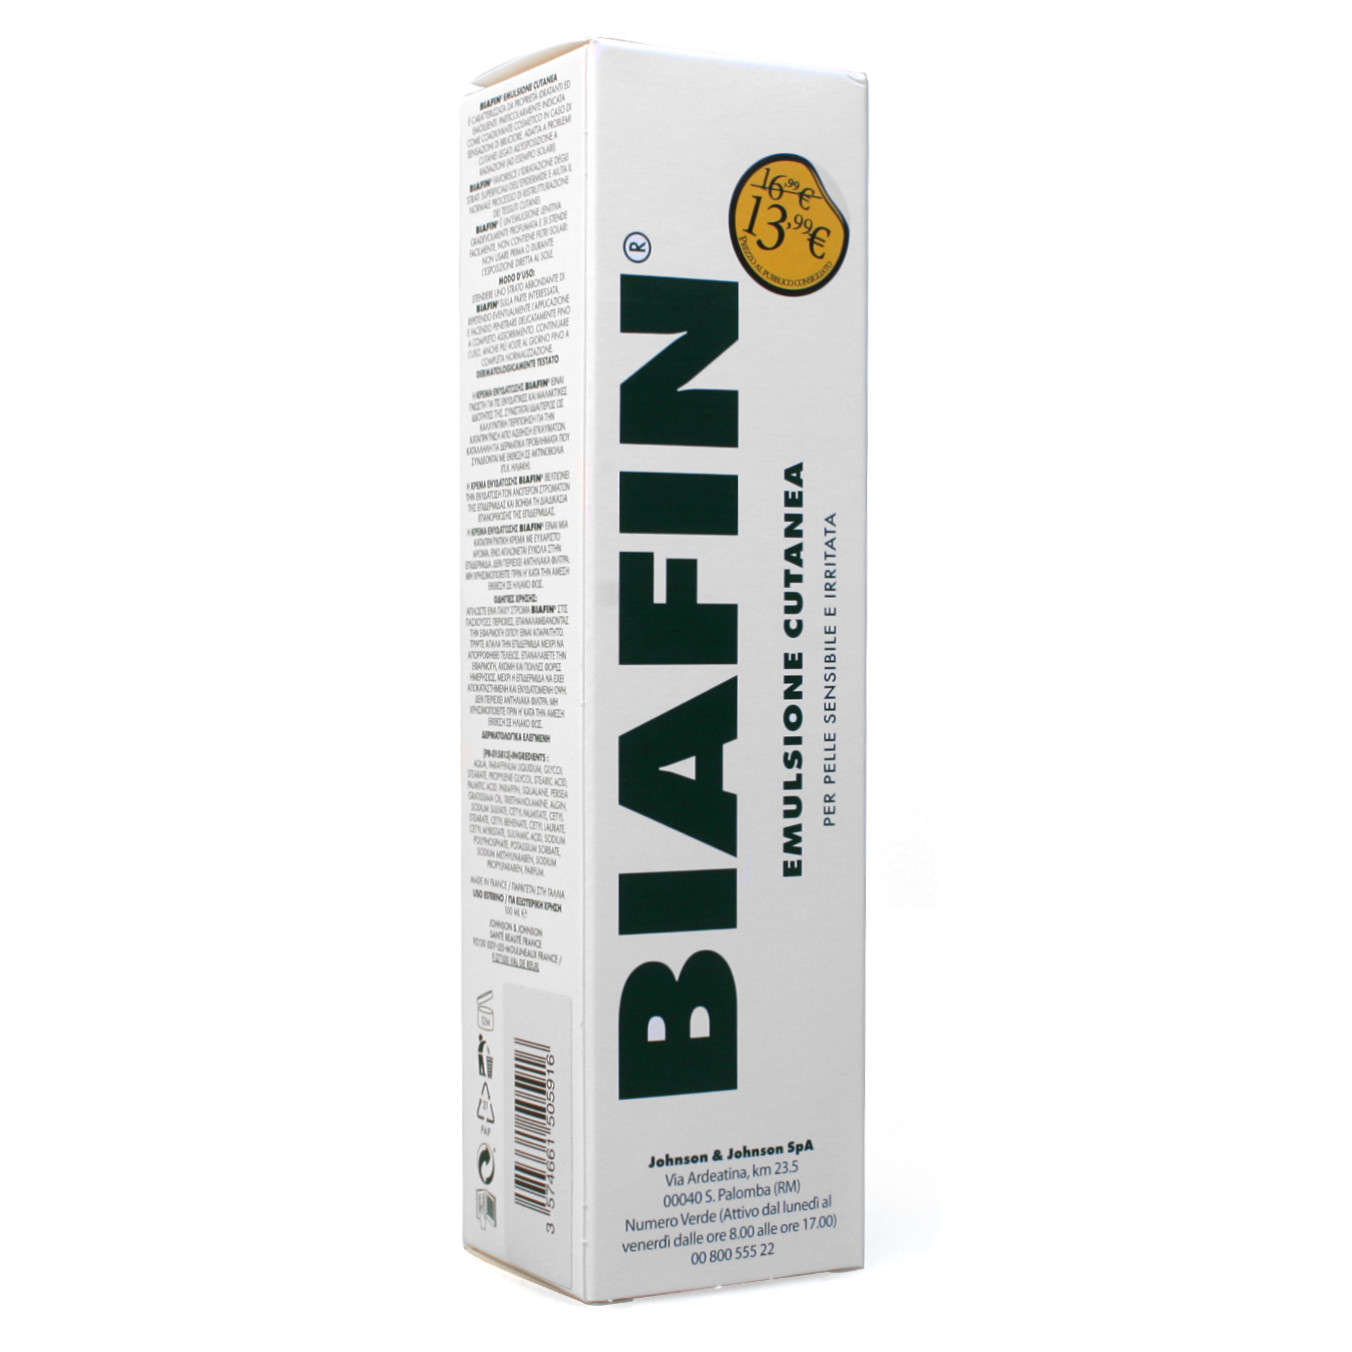 Biafin - Emulsione Idratante - Prezzo Speciale